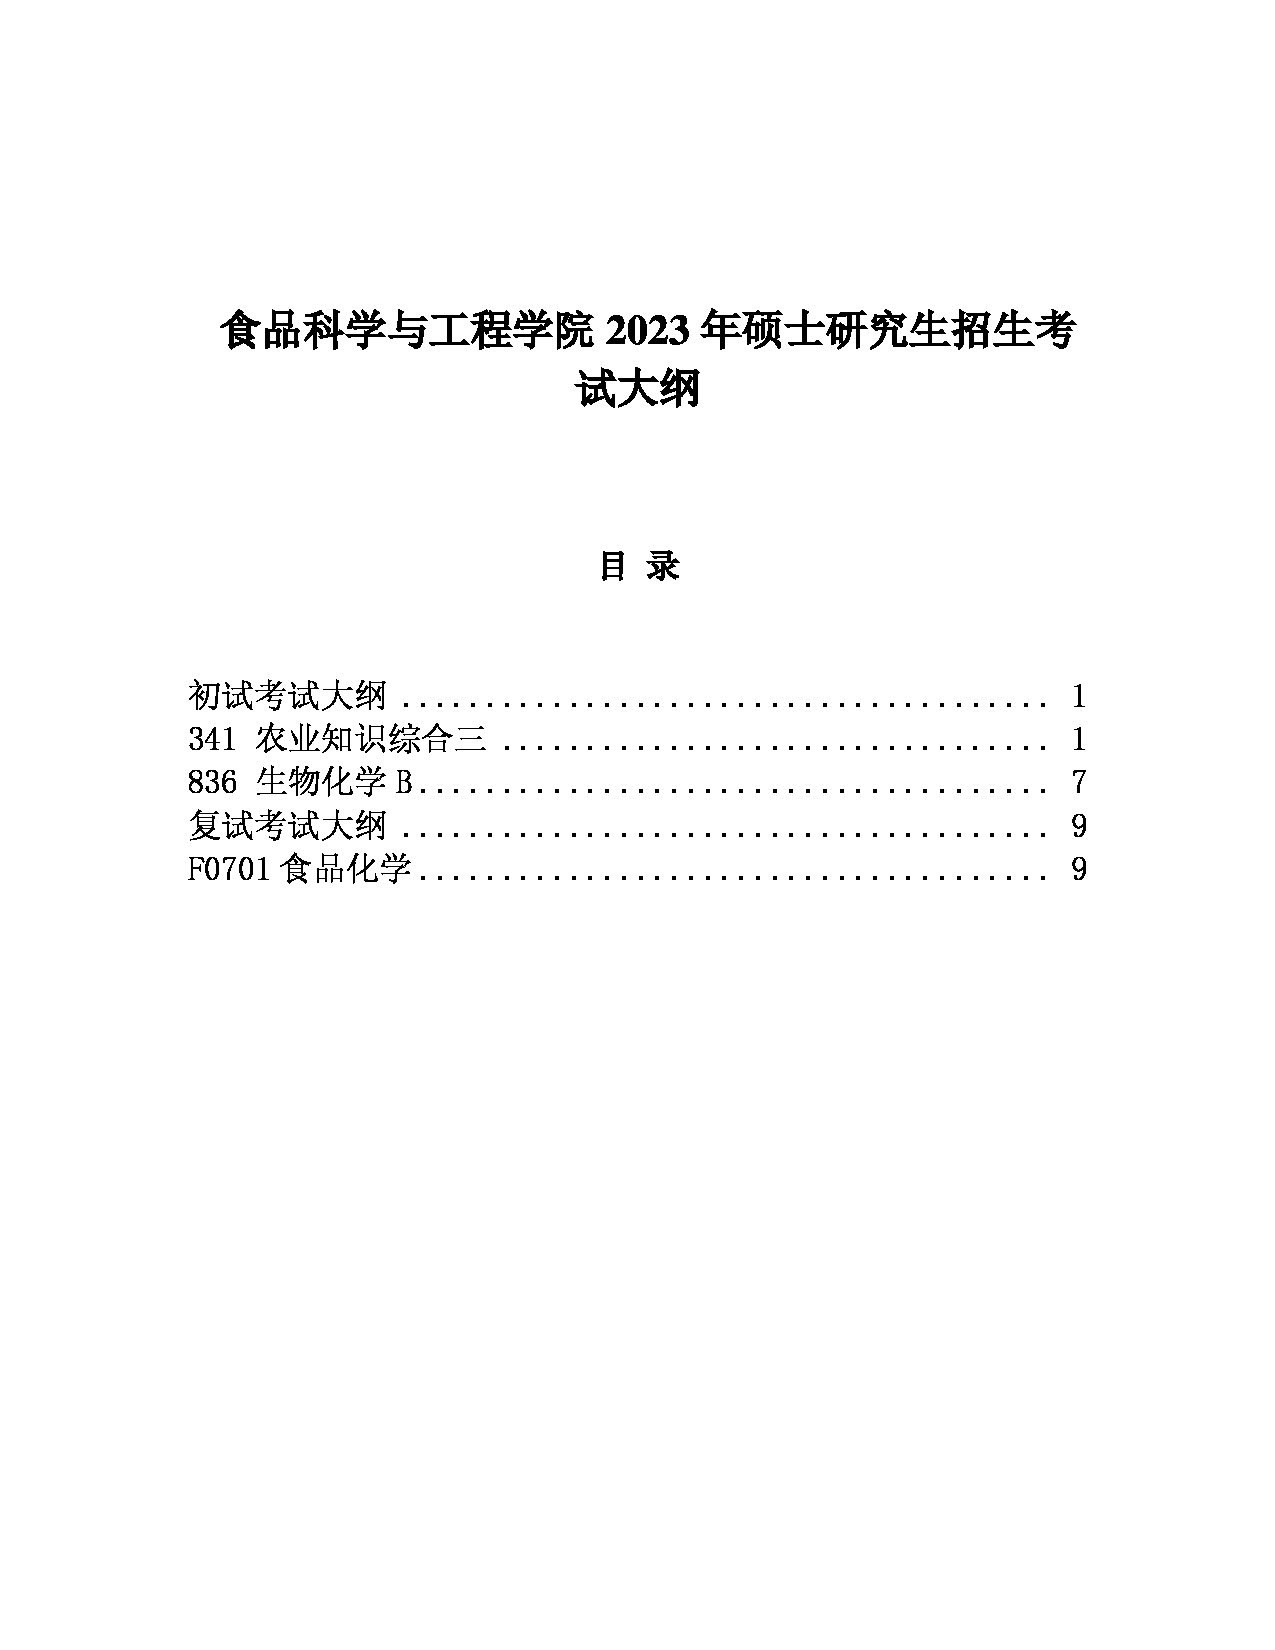 2023考研大纲：中国海洋大学2023年考研 007食品科学与工程学院 考试大纲第1页